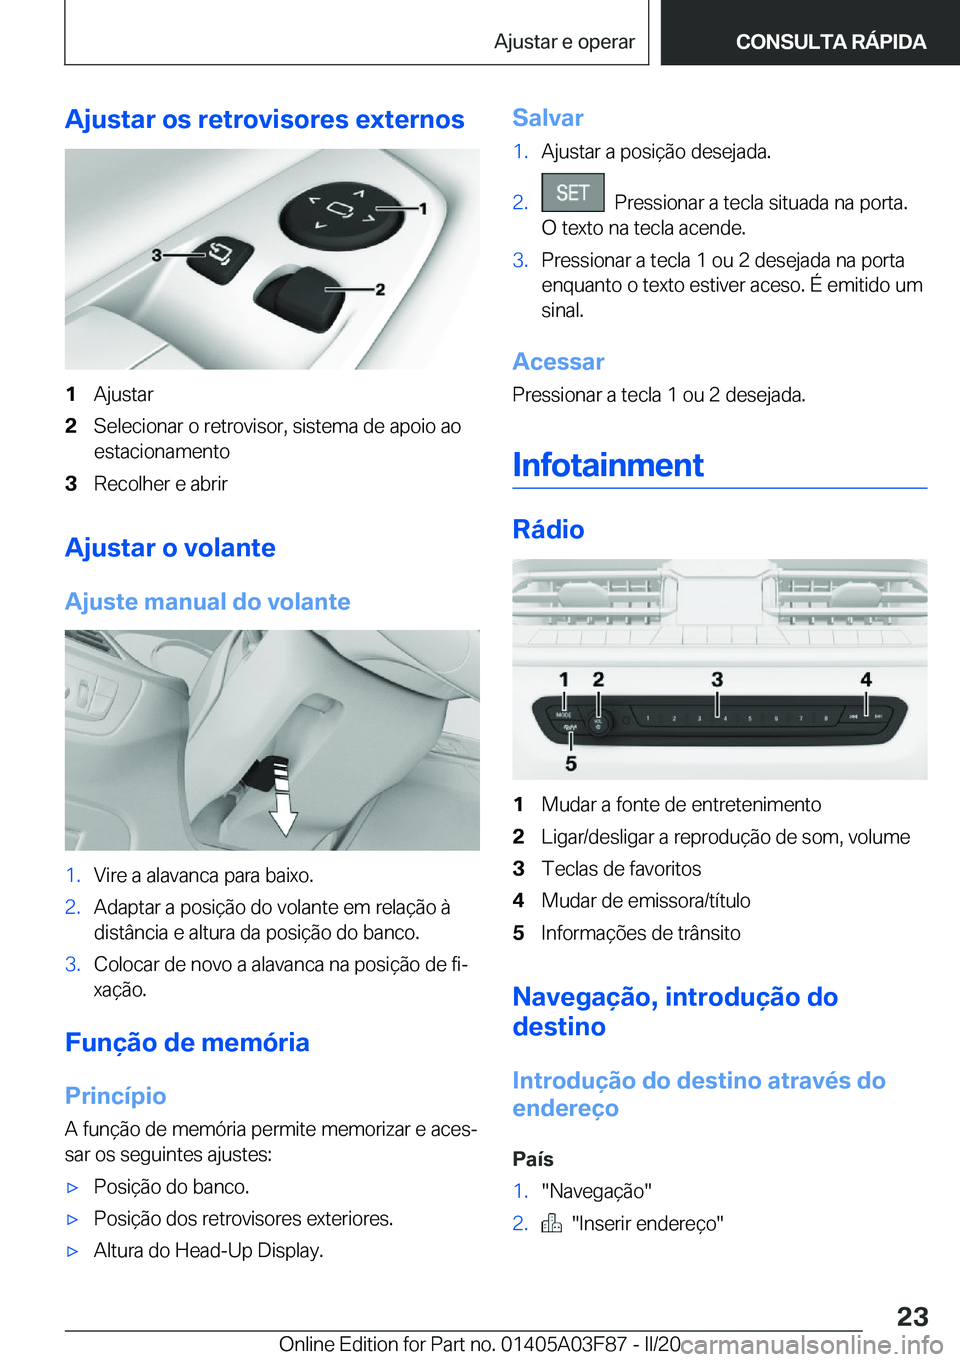 BMW 3 SERIES 2020  Manual do condutor (in Portuguese) �A�j�u�s�t�a�r��o�s��r�e�t�r�o�v�i�s�o�r�e�s��e�x�t�e�r�n�o�s�1�A�j�u�s�t�a�r�2�S�e�l�e�c�i�o�n�a�r��o��r�e�t�r�o�v�i�s�o�r�,��s�i�s�t�e�m�a��d�e��a�p�o�i�o��a�o�e�s�t�a�c�i�o�n�a�m�e�n�t�o�3